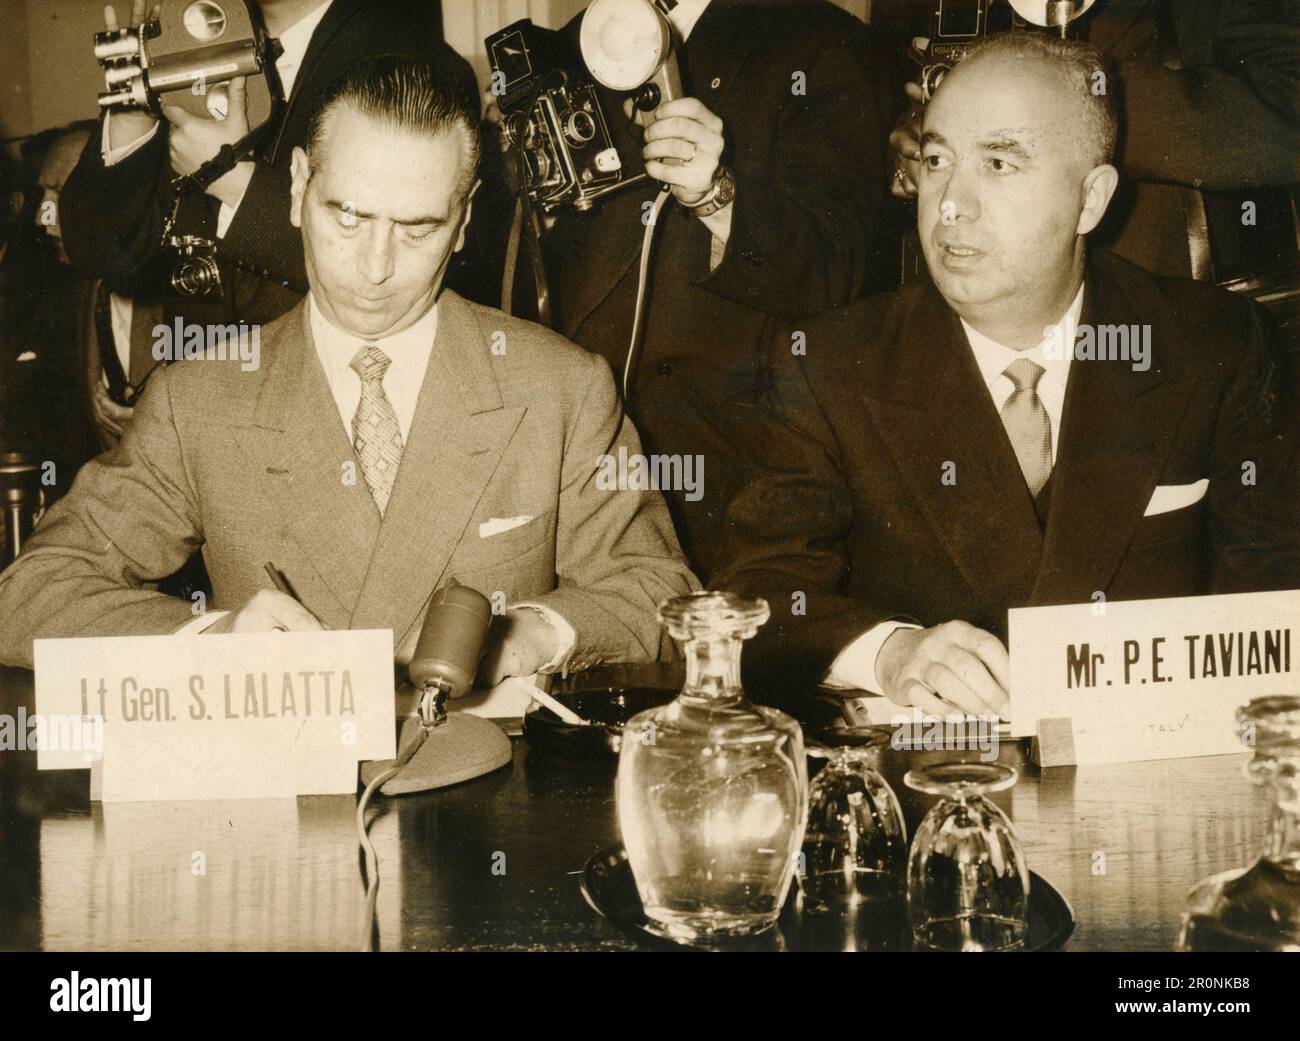 Général de corps italien S. Lalatta et chef politique et économiste Paolo Emilio Taviani lors d'une conférence de presse, Italie 1965 Banque D'Images